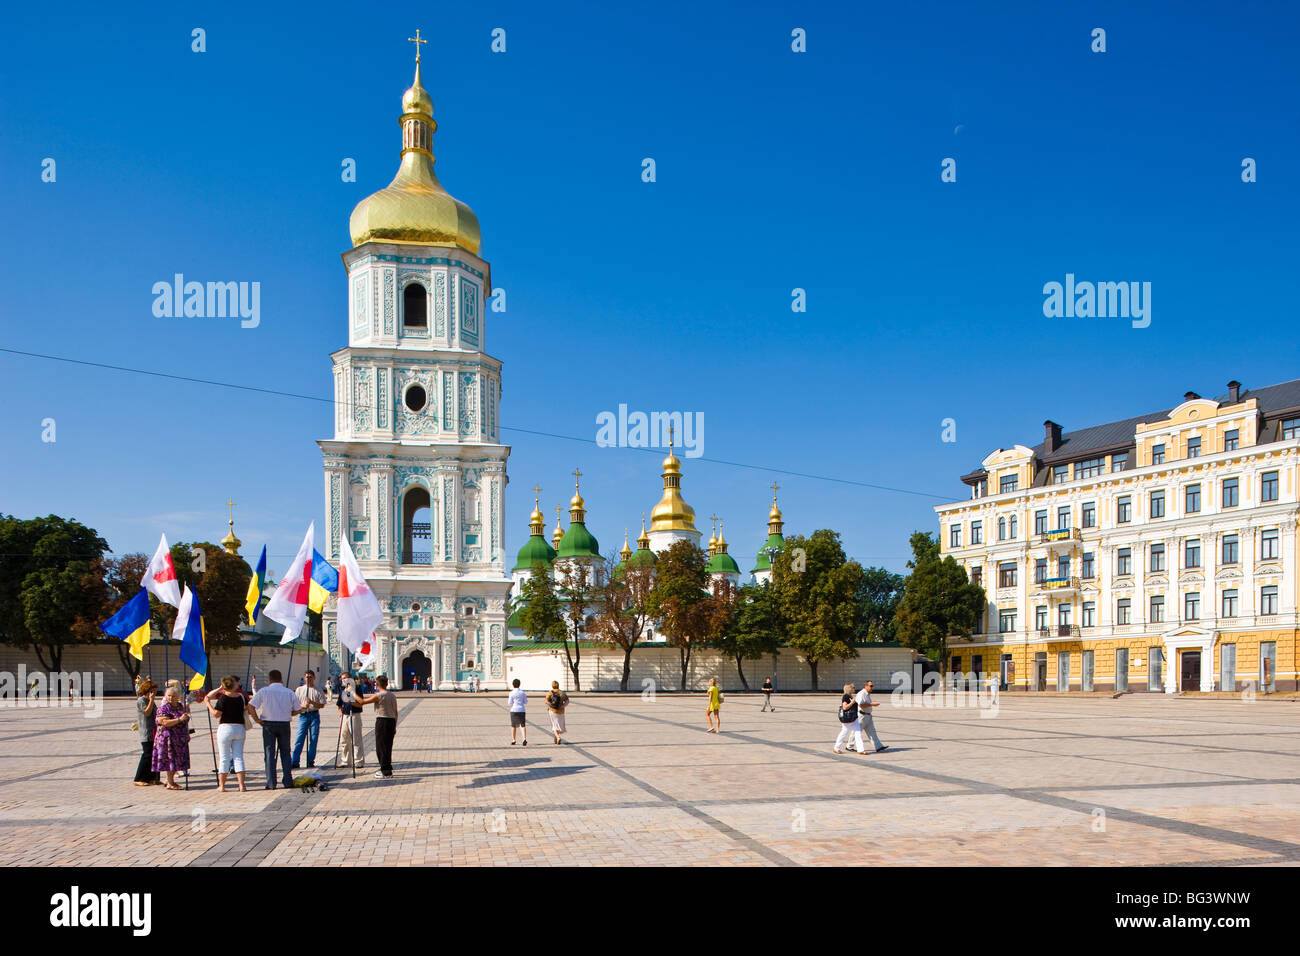 Unabhängigkeitstag, ukrainischen nationalen Flaggen auf dem Platz vor der St. Sophia Cathedral, UNESCO-Weltkulturerbe, Kiew, Ukraine Stockfoto